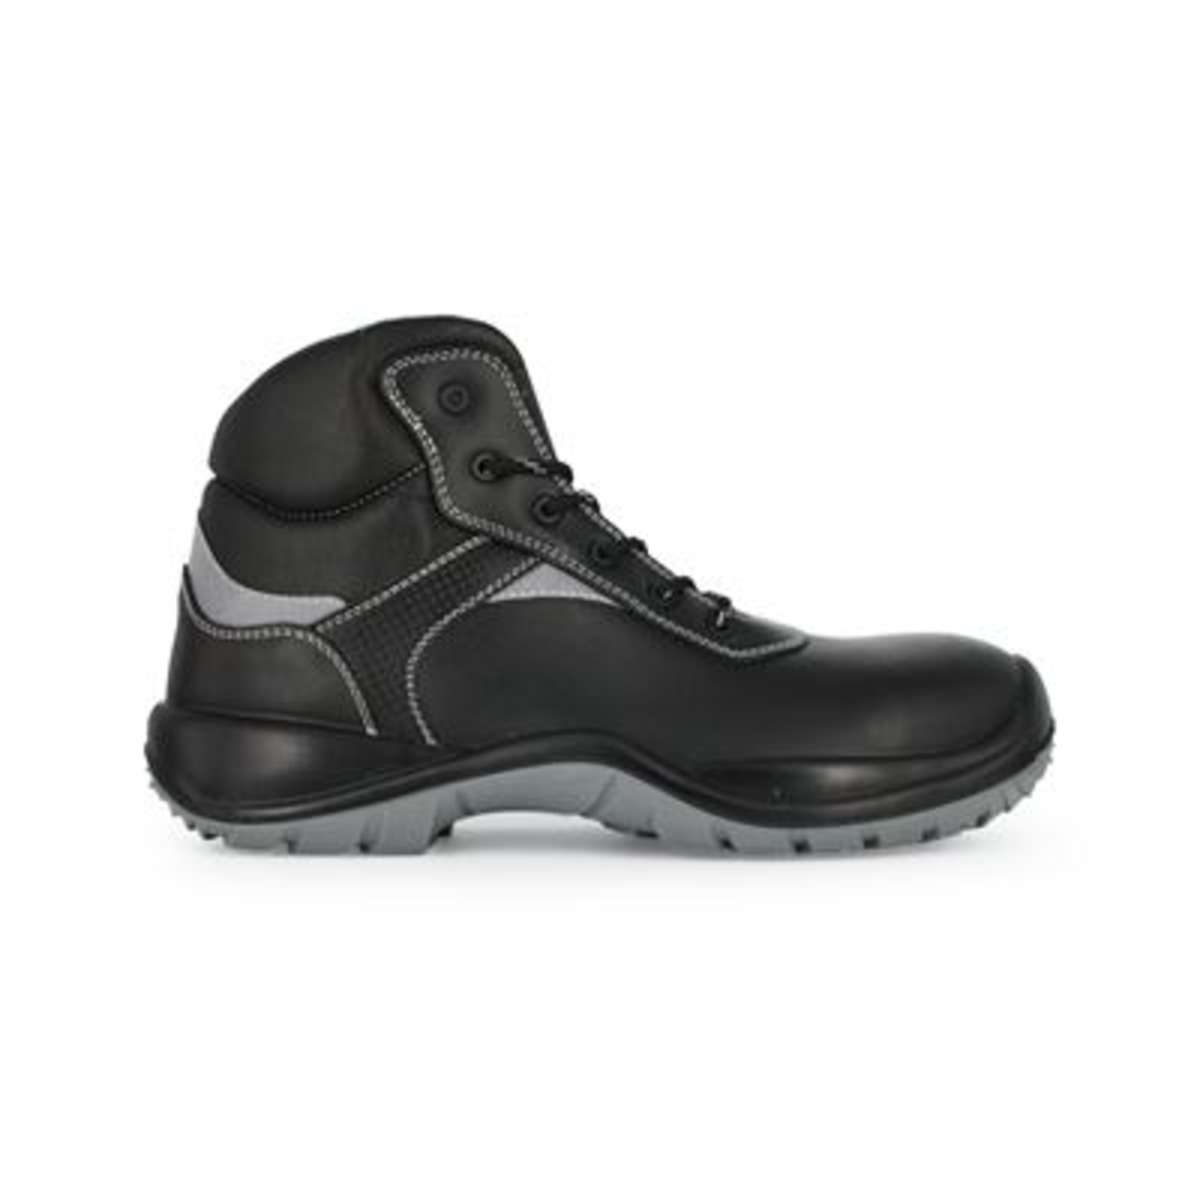 Chaussure de sécurité montante noir Vincent T.38 - Nord'Ways - VIN000138000NOIR